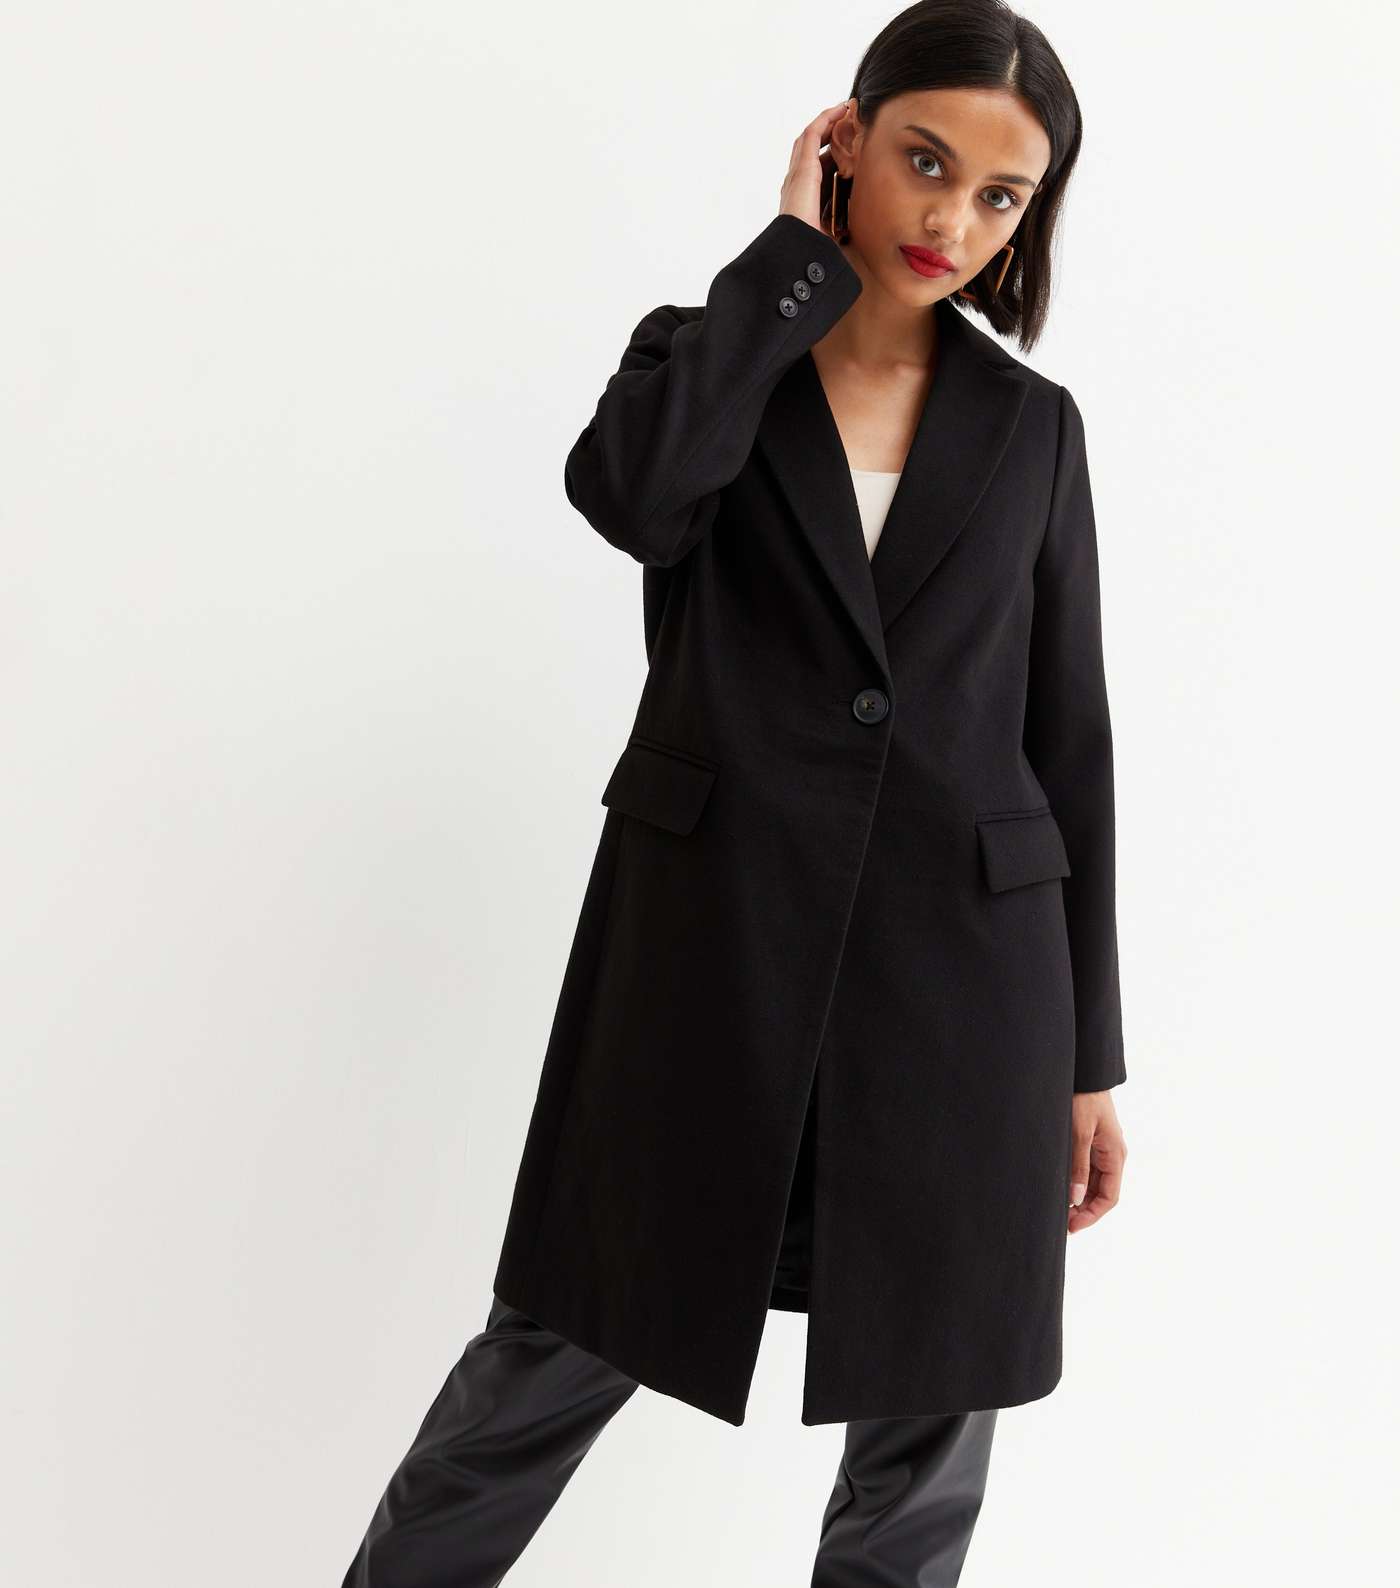 Black Lined Long Formal Coat Image 3